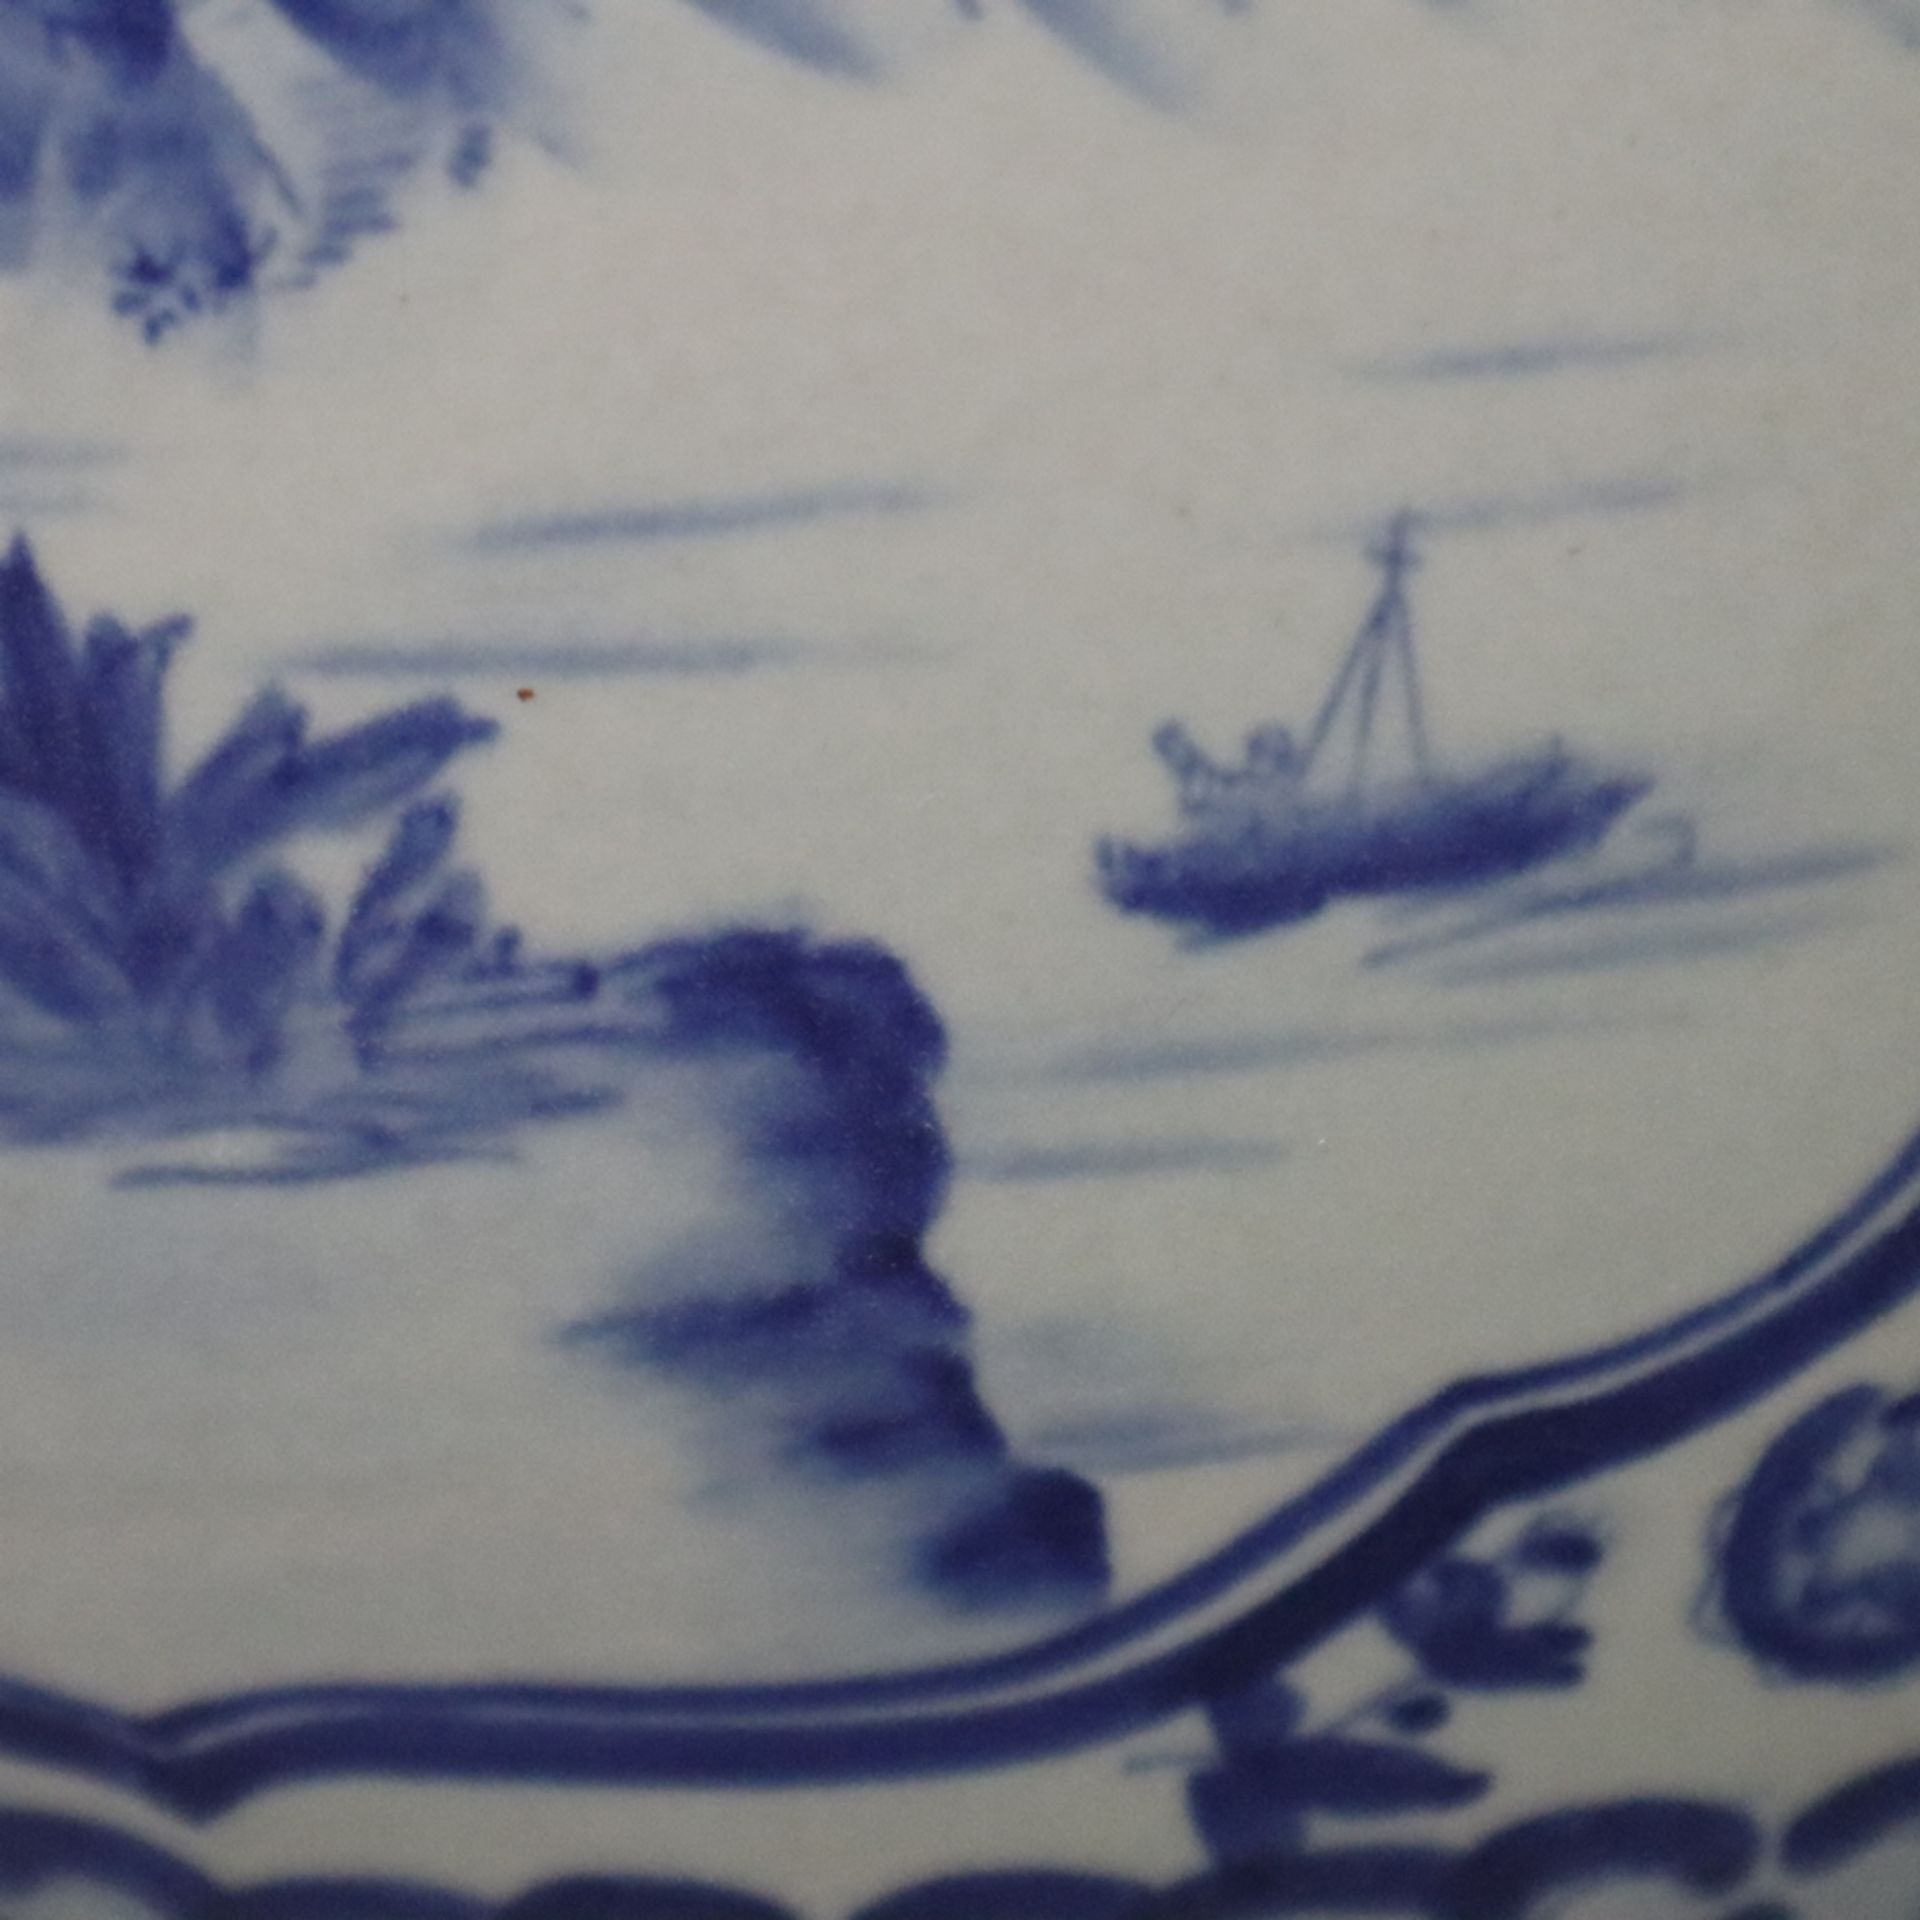 Blau-weißer Cachepot - China, 20. Jh., Porzellan, blau-weiß bemalt, bauchiger Korpus mit eingezogen - Bild 8 aus 9